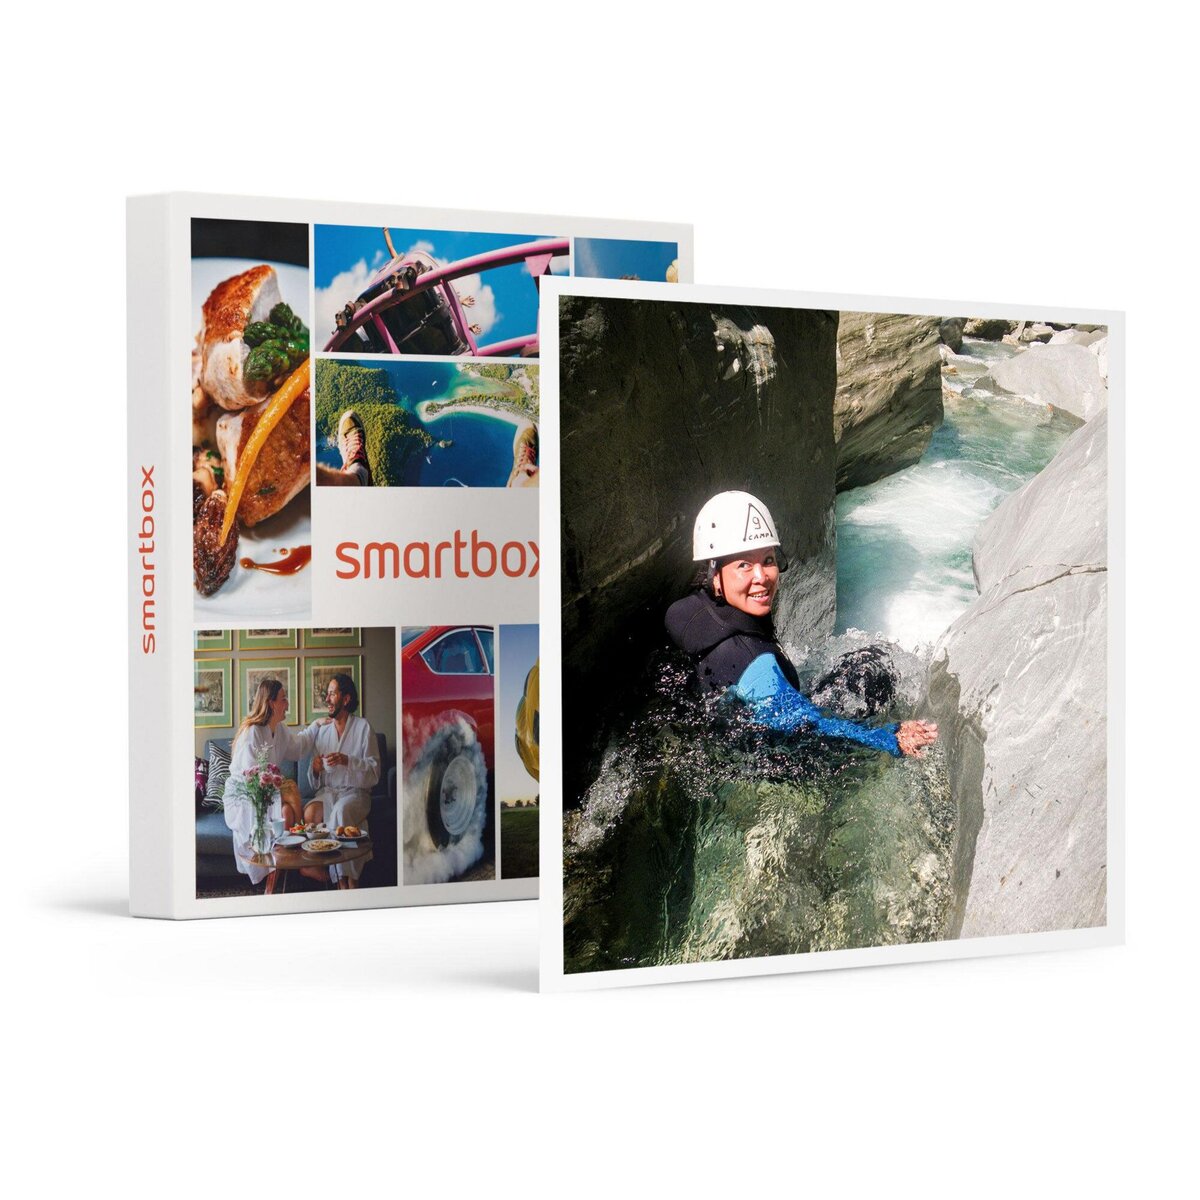 Coffret cadeau - Smartbox - Sensations et aventures - Coffrets sport et  aventure